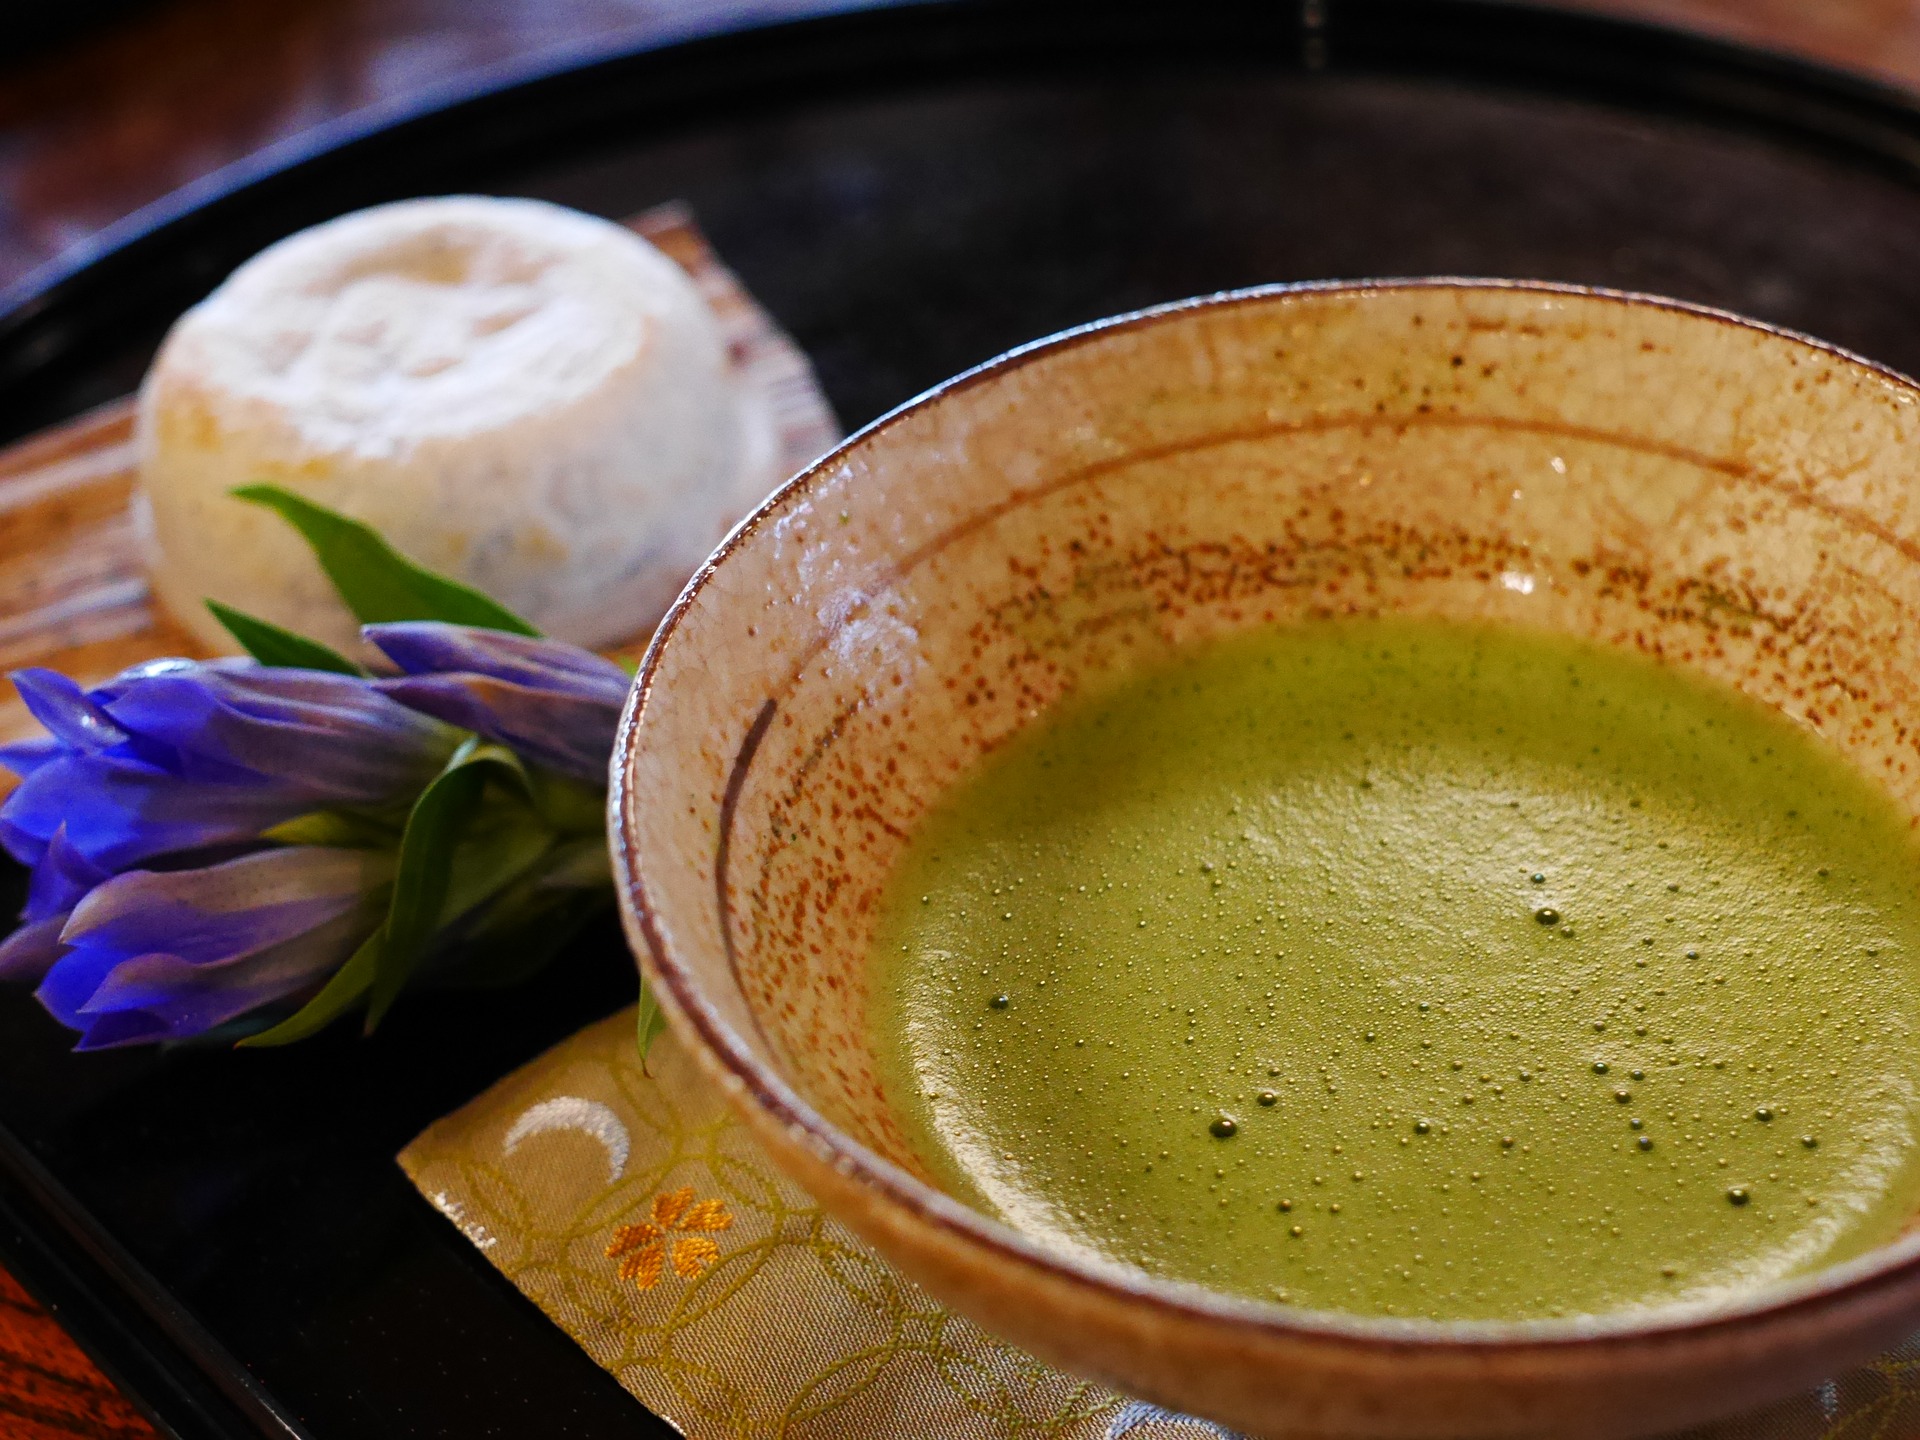 japońska zielona herbata